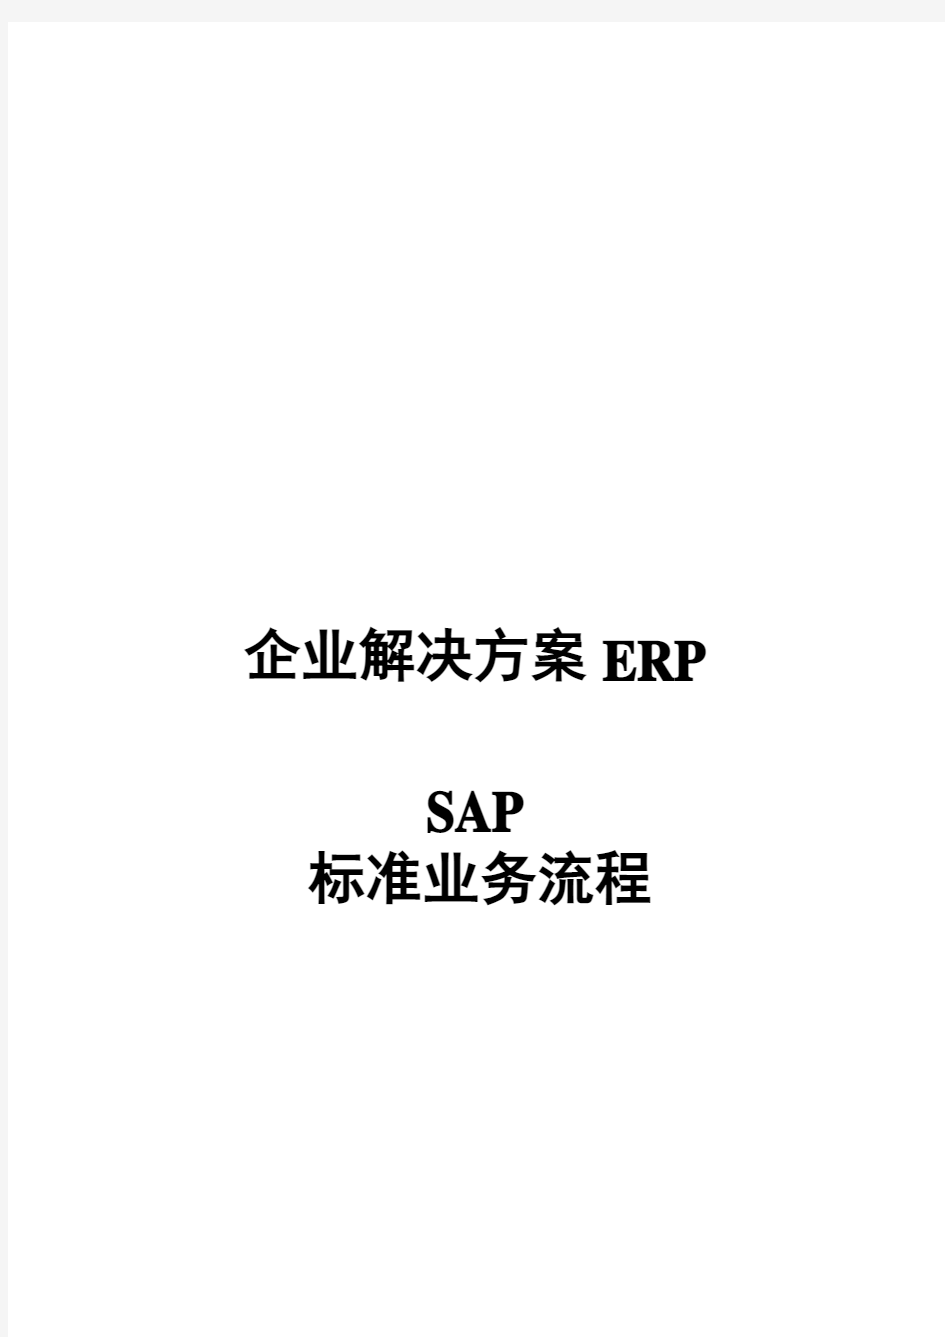 SAP系统业务流程